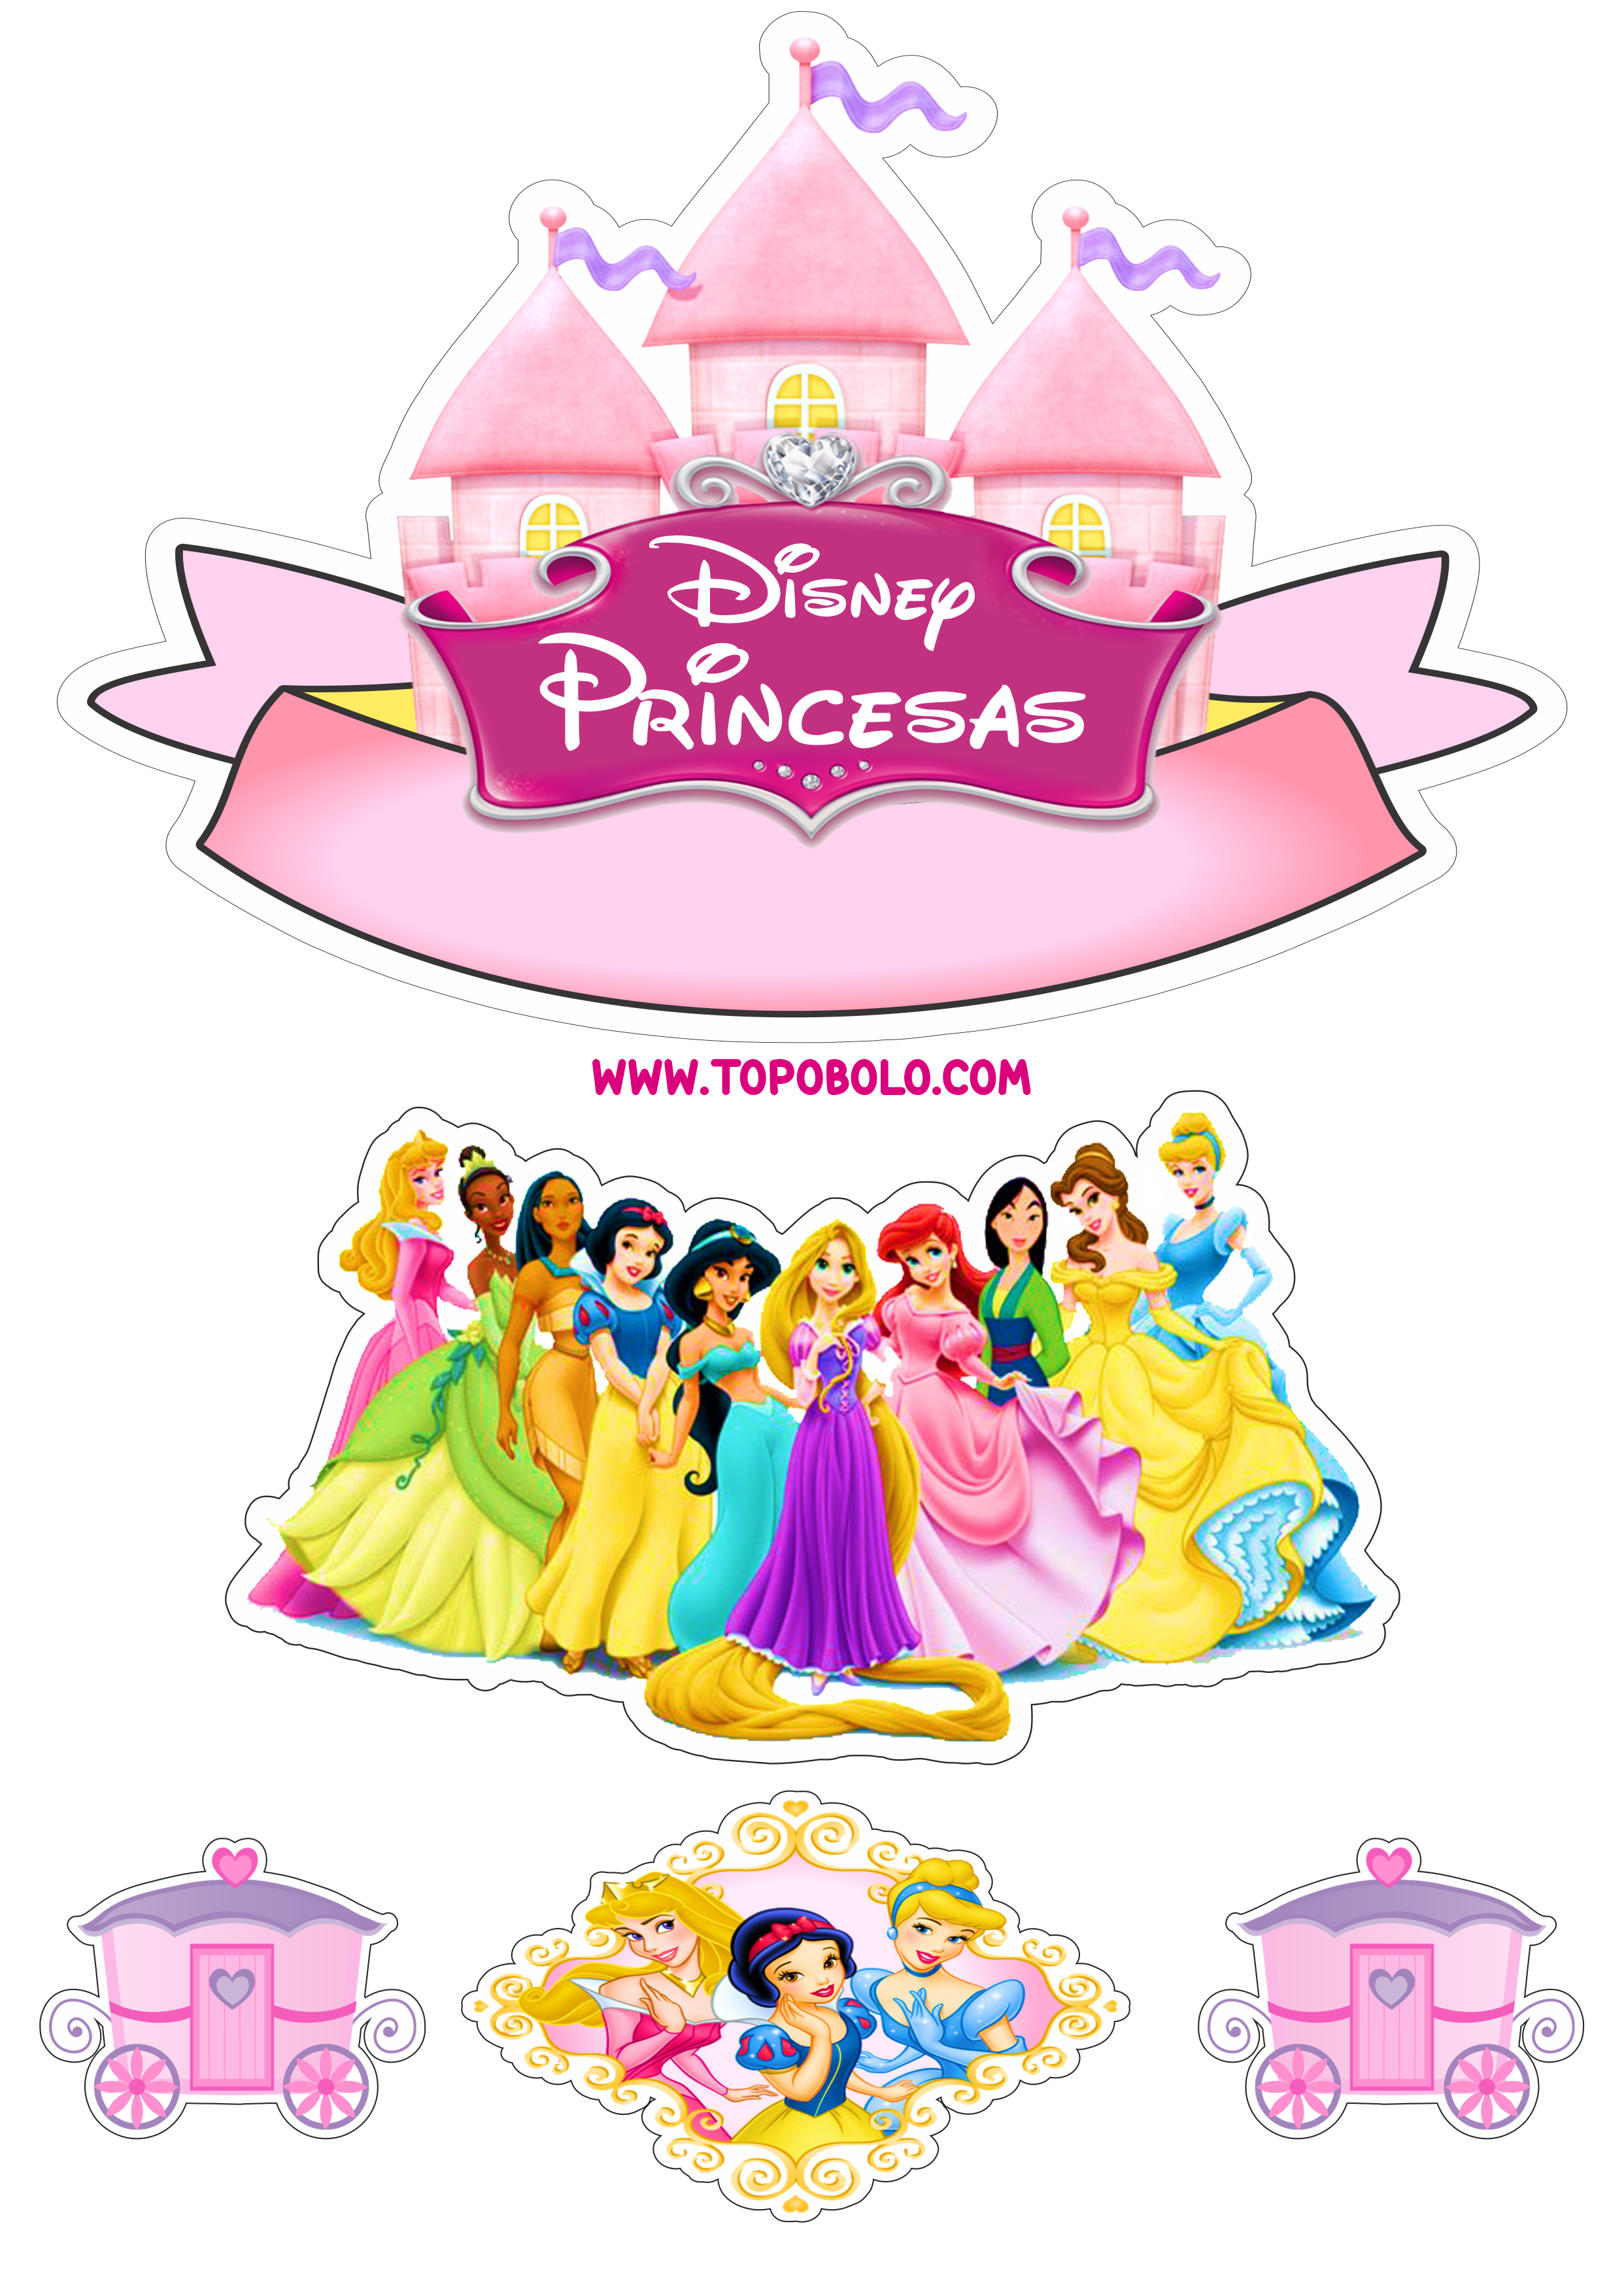 Princesas Disney topo de bolo pronto para imprimir aniversário infantil papelaria criativa fazendo a nossa festa png